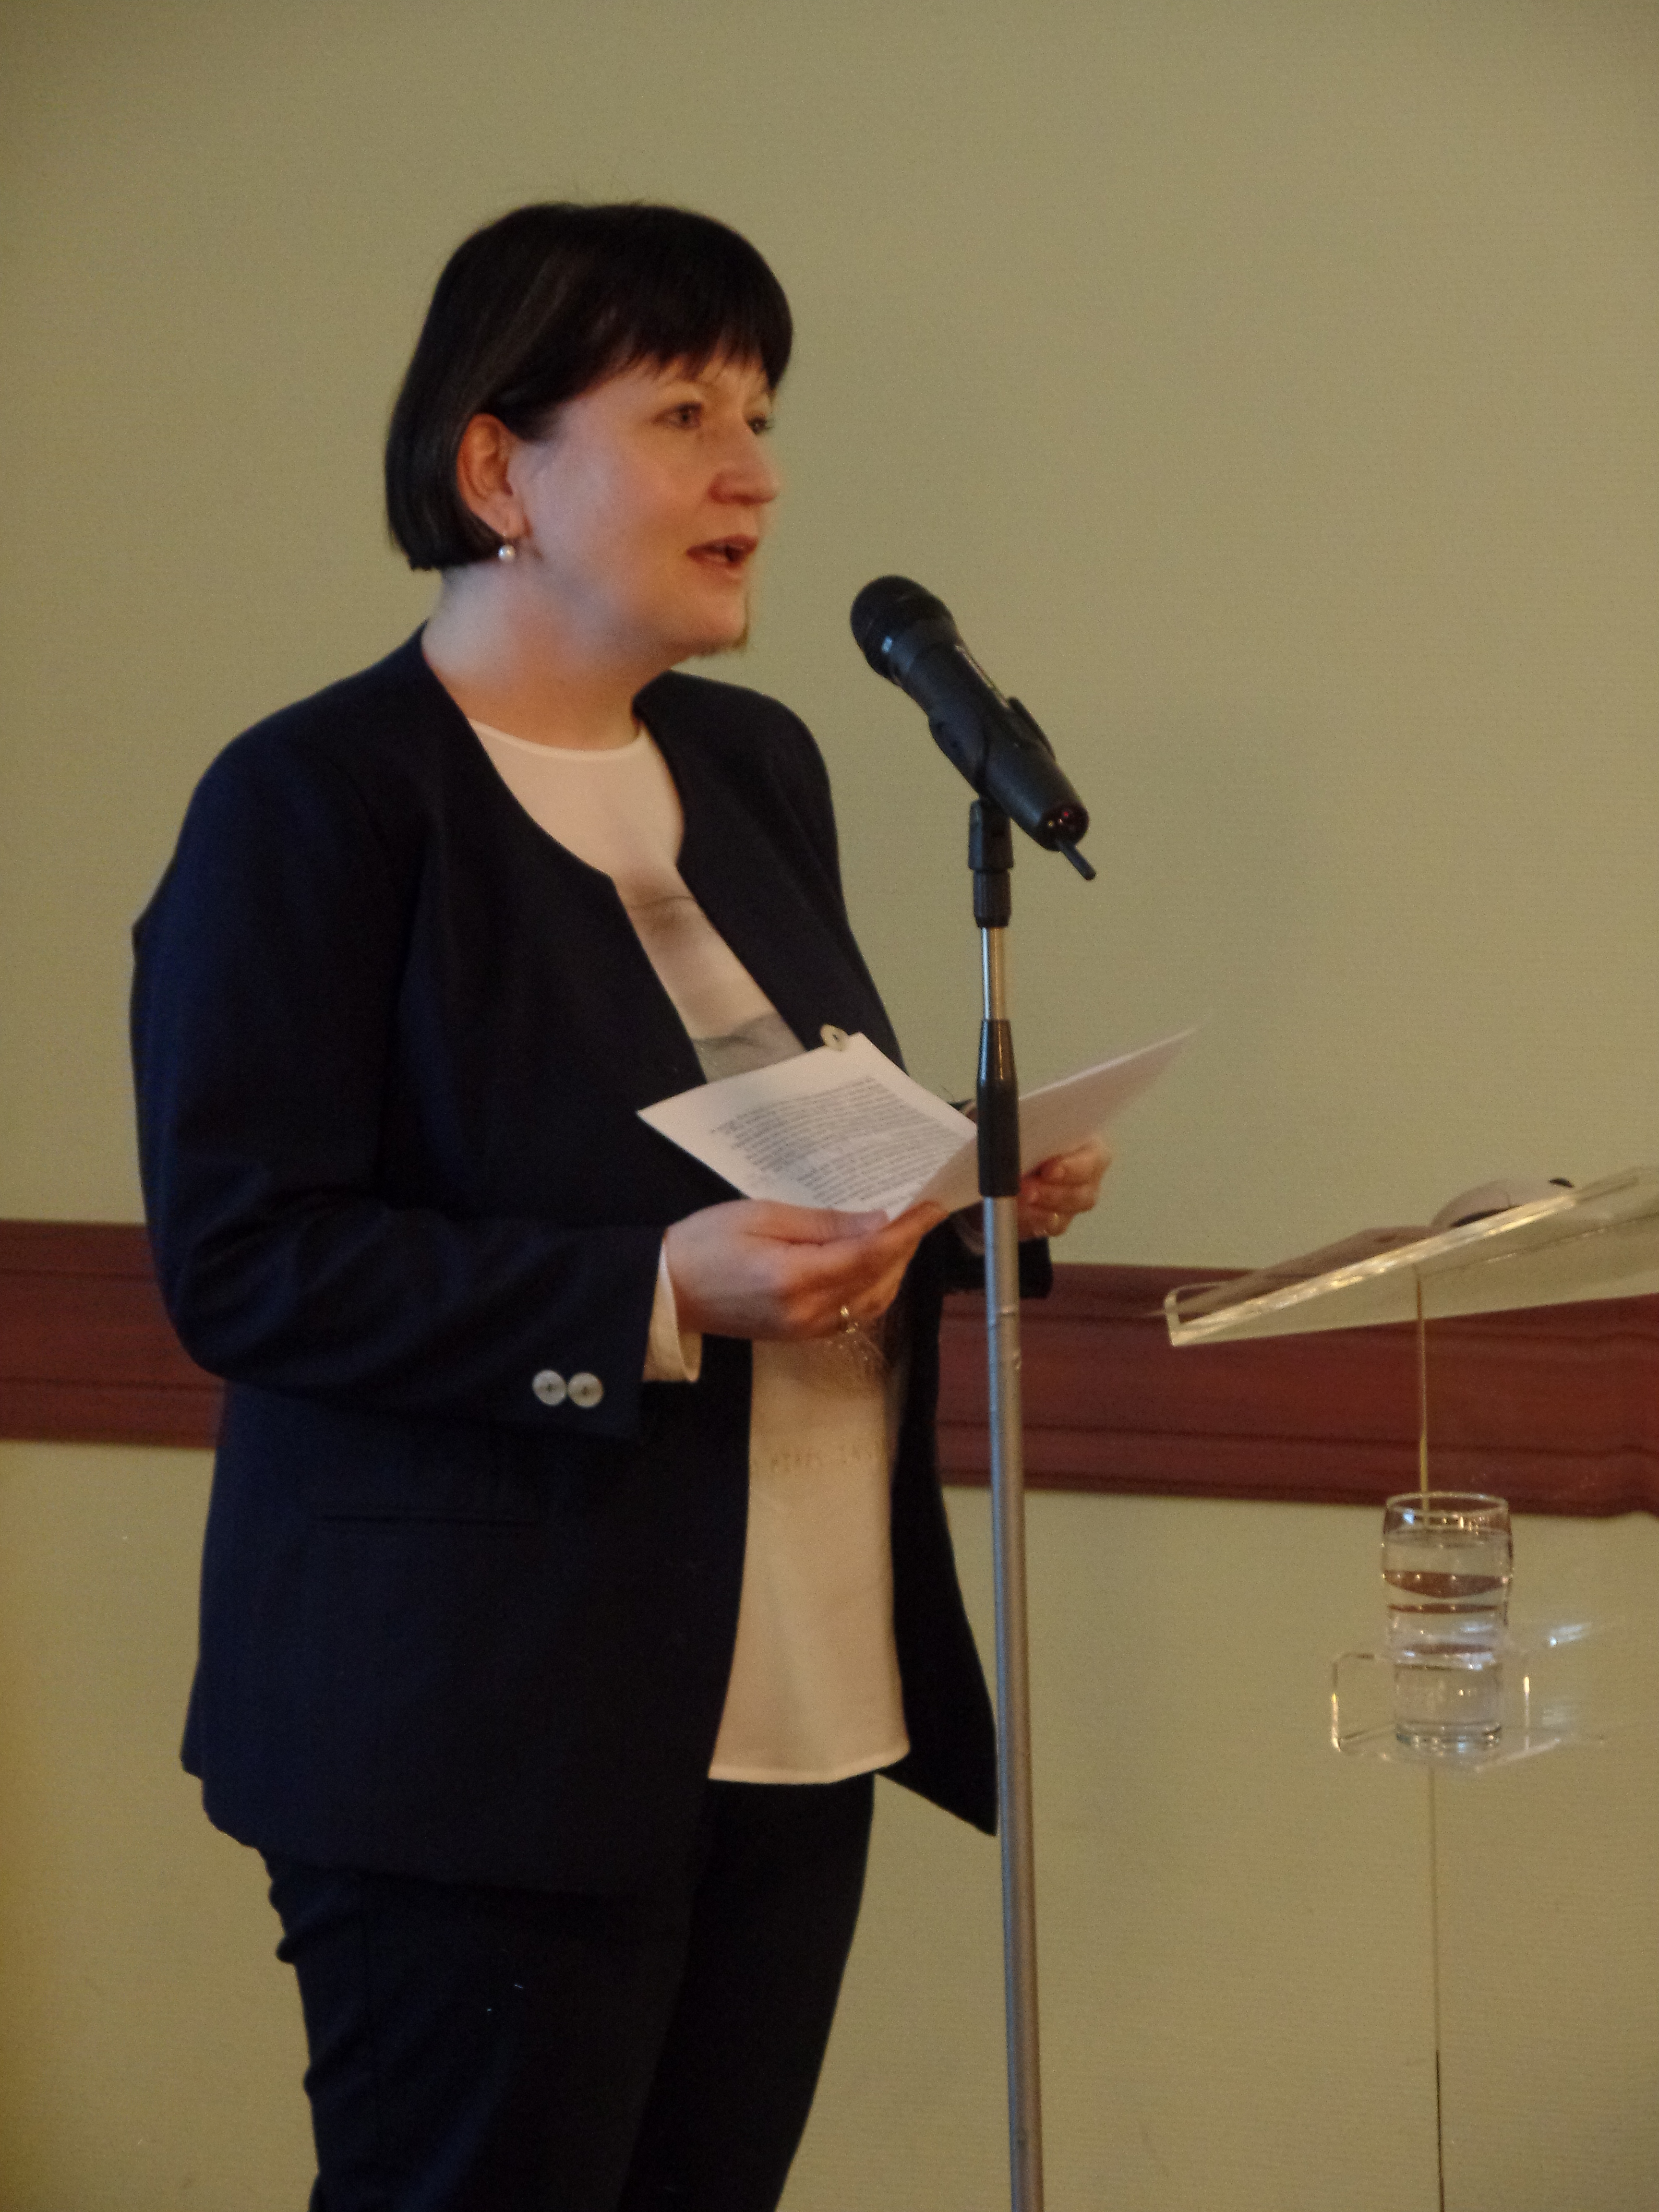 Kovács Eleonóra főlevéltáros (MNL Országos Levéltár), a Magyarországi Evangélikus Egyház Gyűjteményi Tanácsának elnöke megnyitja a rendezvényt